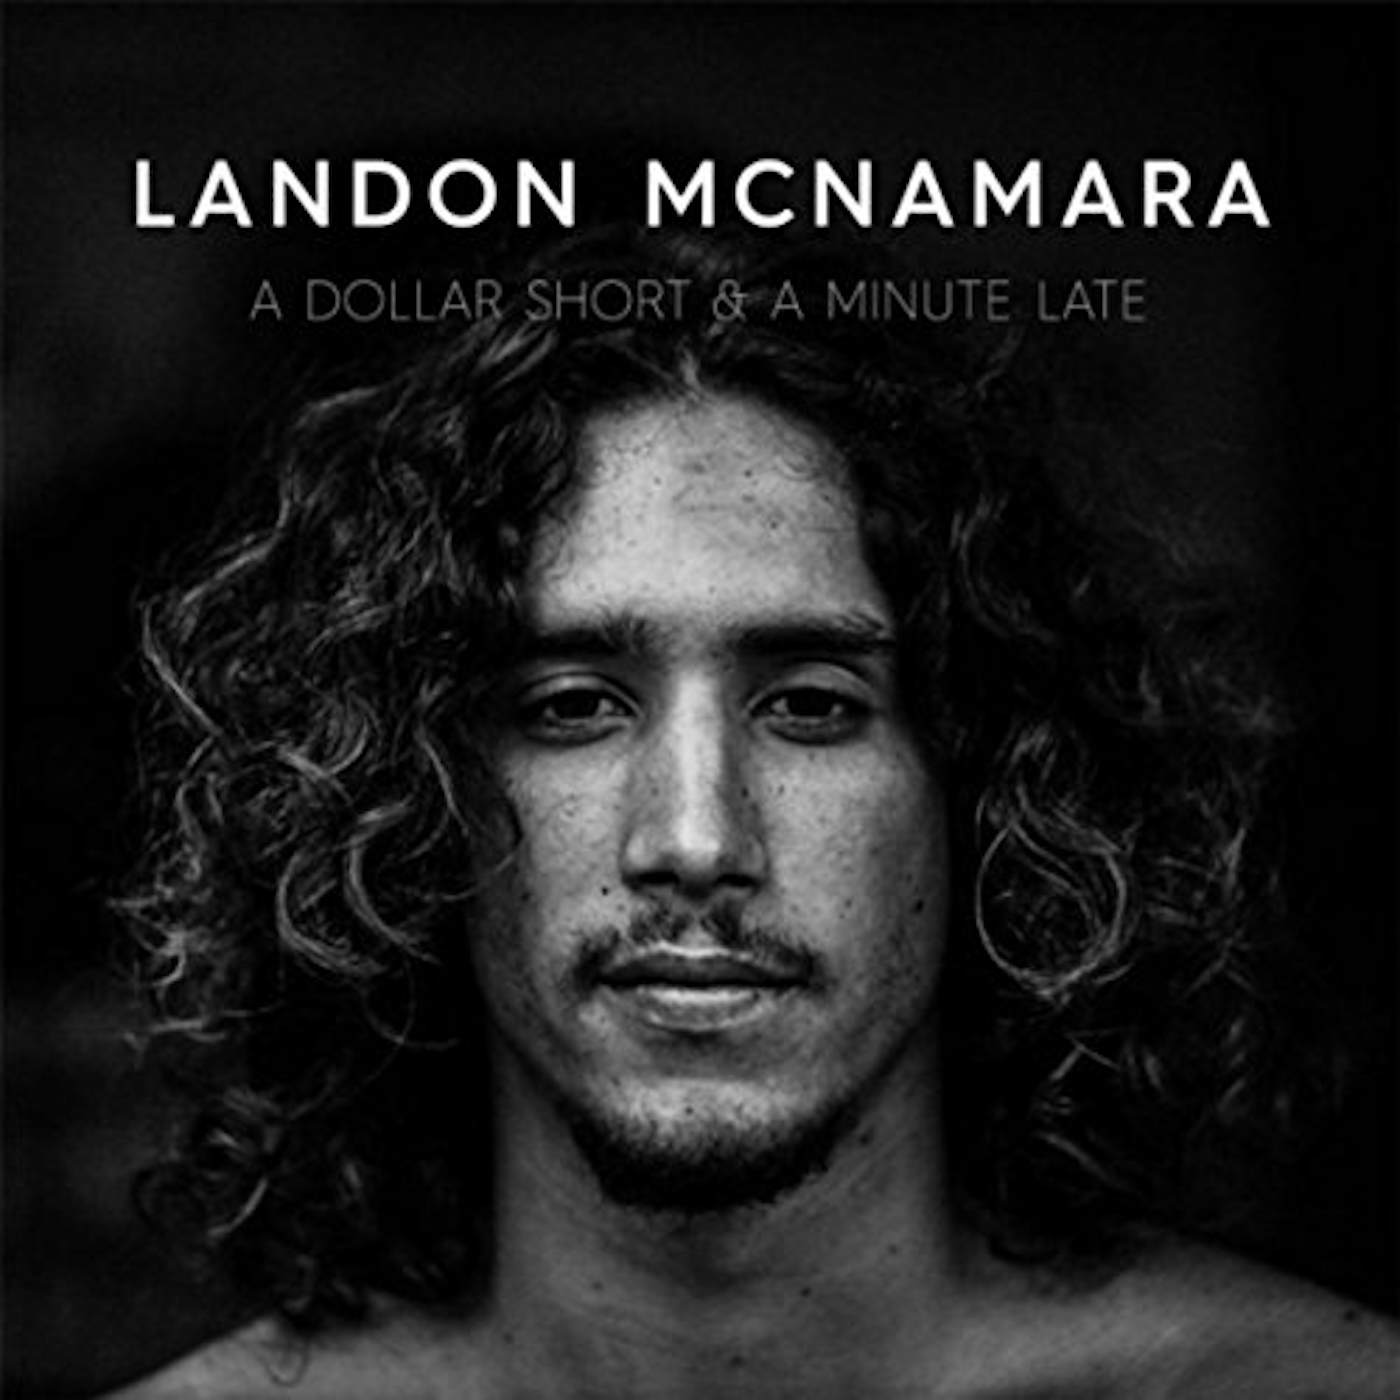 Landon McNamara DOLLAR SHORT & MINUTE LATE CD